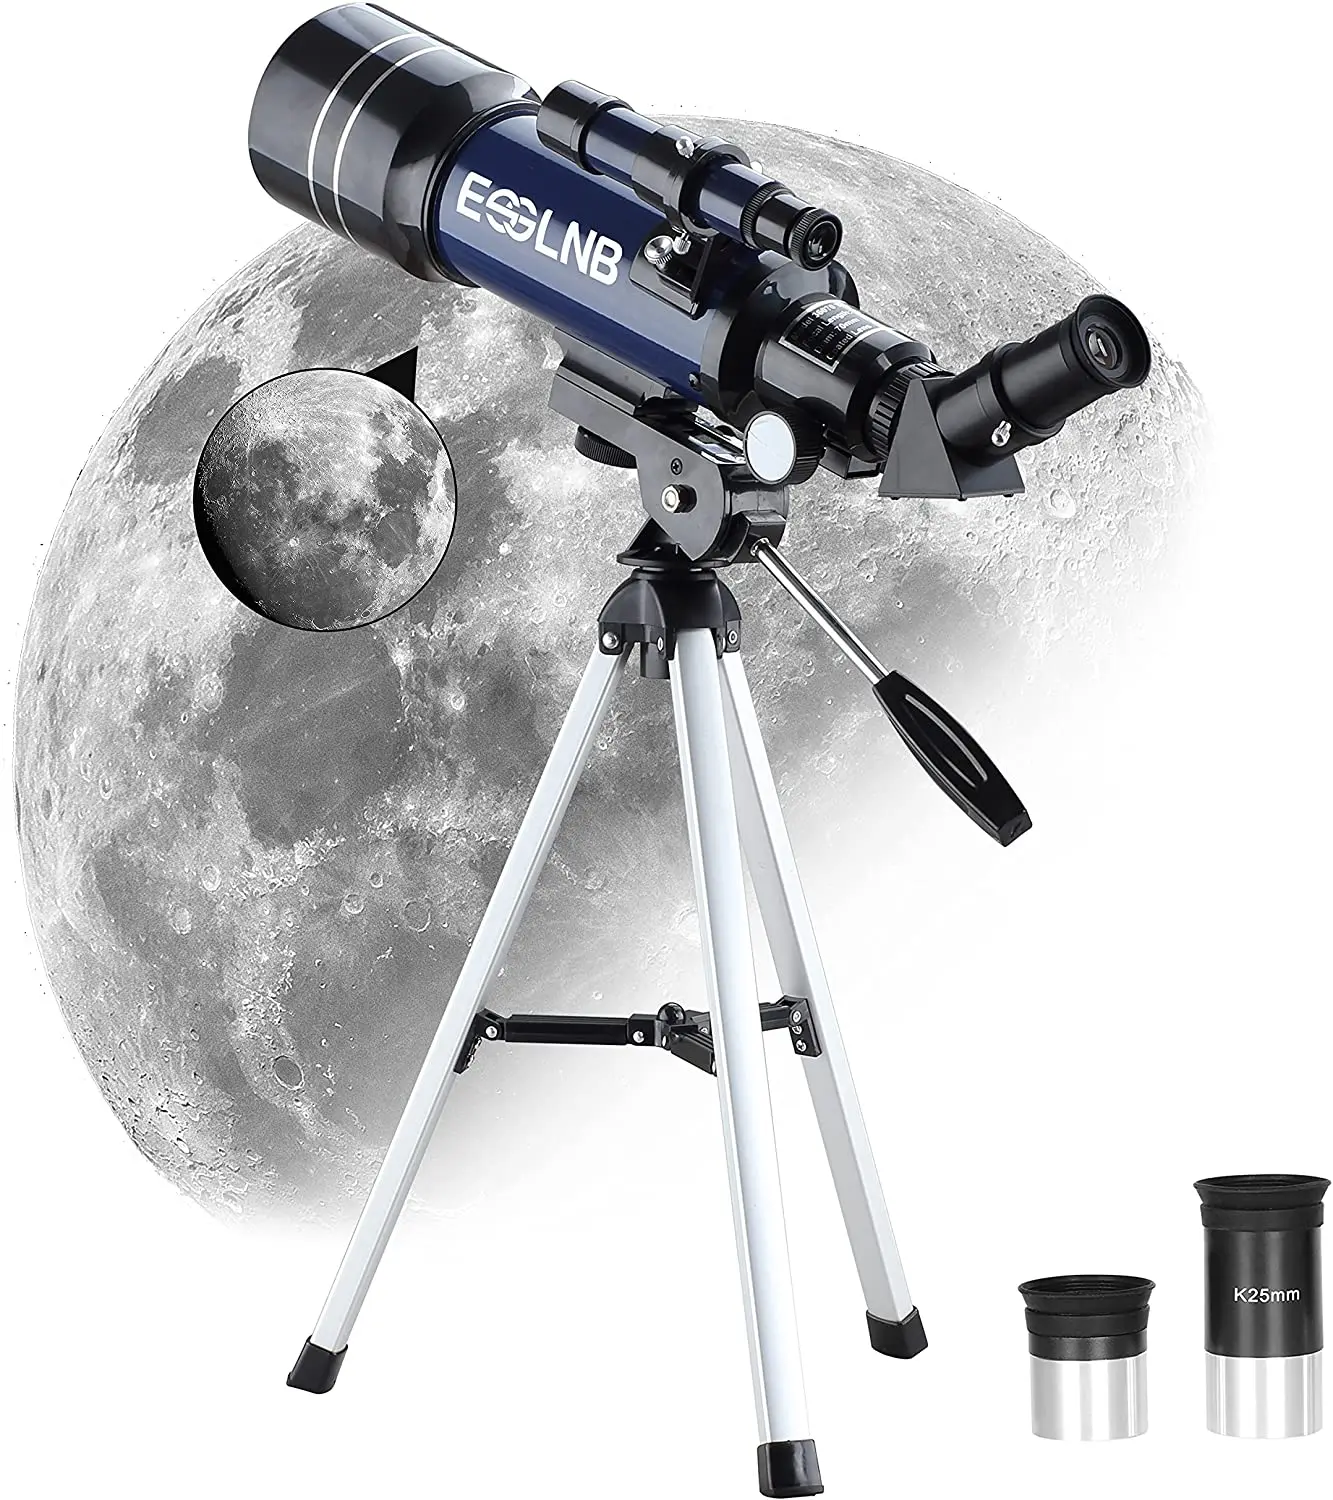 

Телескоп для начинающих ESSLNB для детей и детей, 70 мм, телескопы с астрономическим рефрактором, детский телескоп с многослойным покрытием